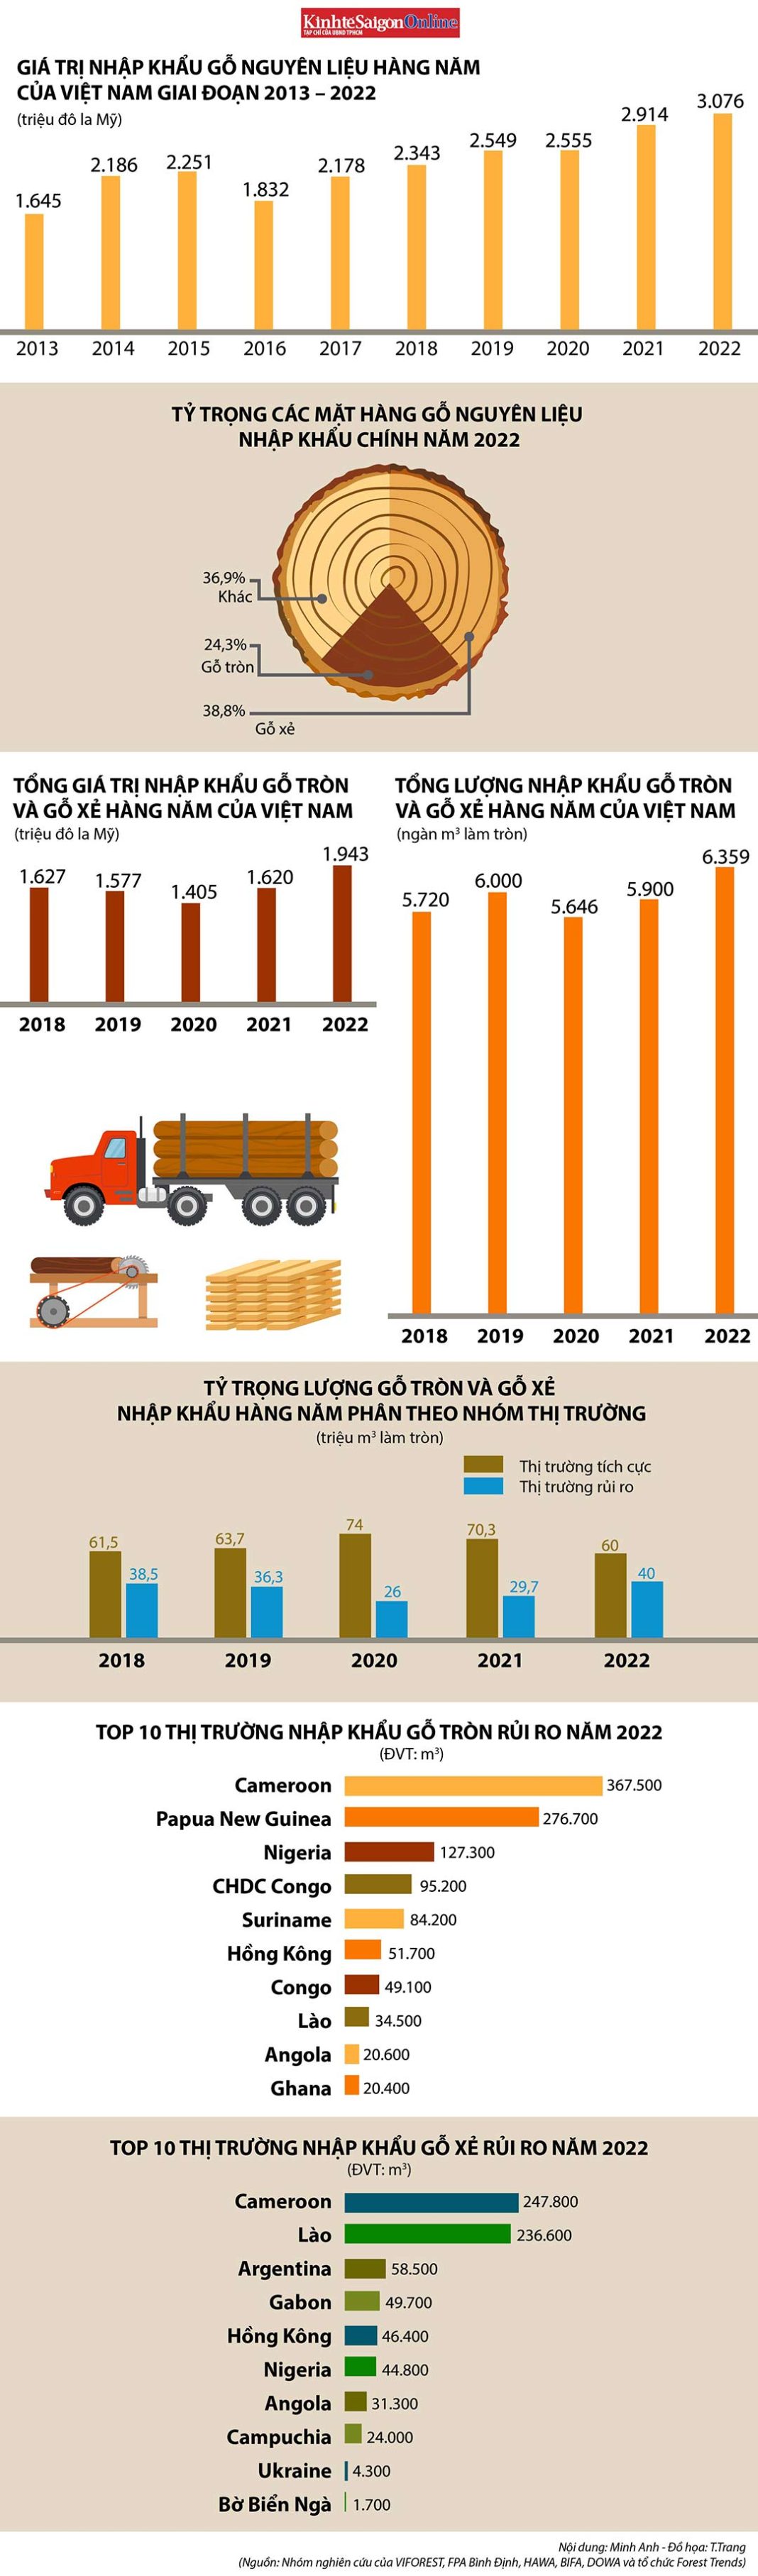 Gần một nửa nguồn gỗ nguyên liệu nhập khẩu của Việt Nam đến từ thị trường rủi ro